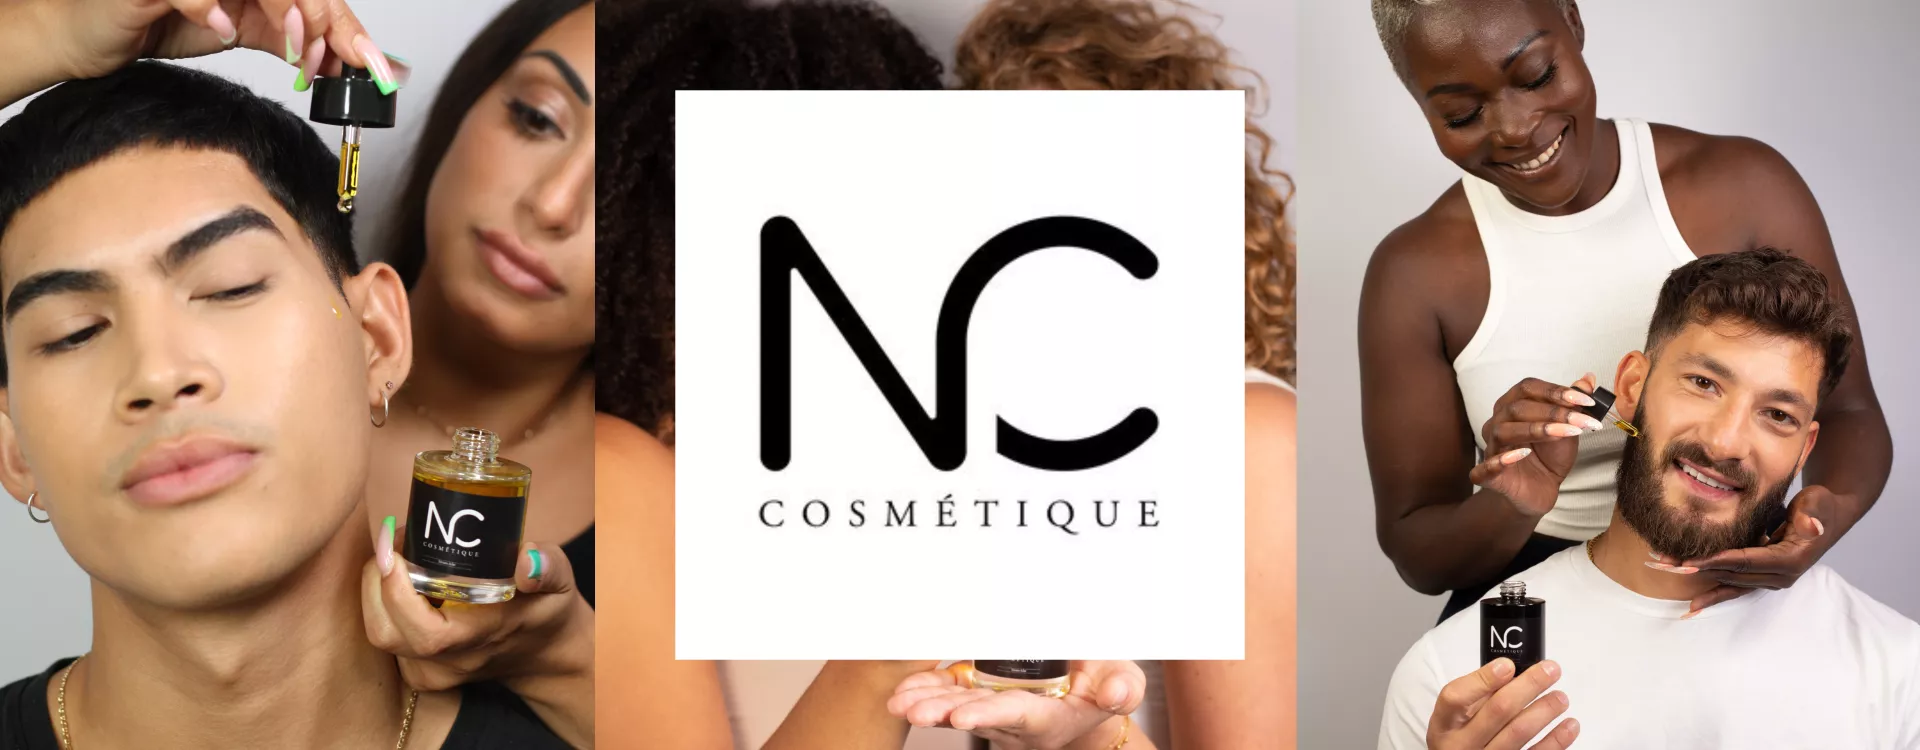 Nisserine - NC Cosmétique - Dreams Lab Pop-Up Store